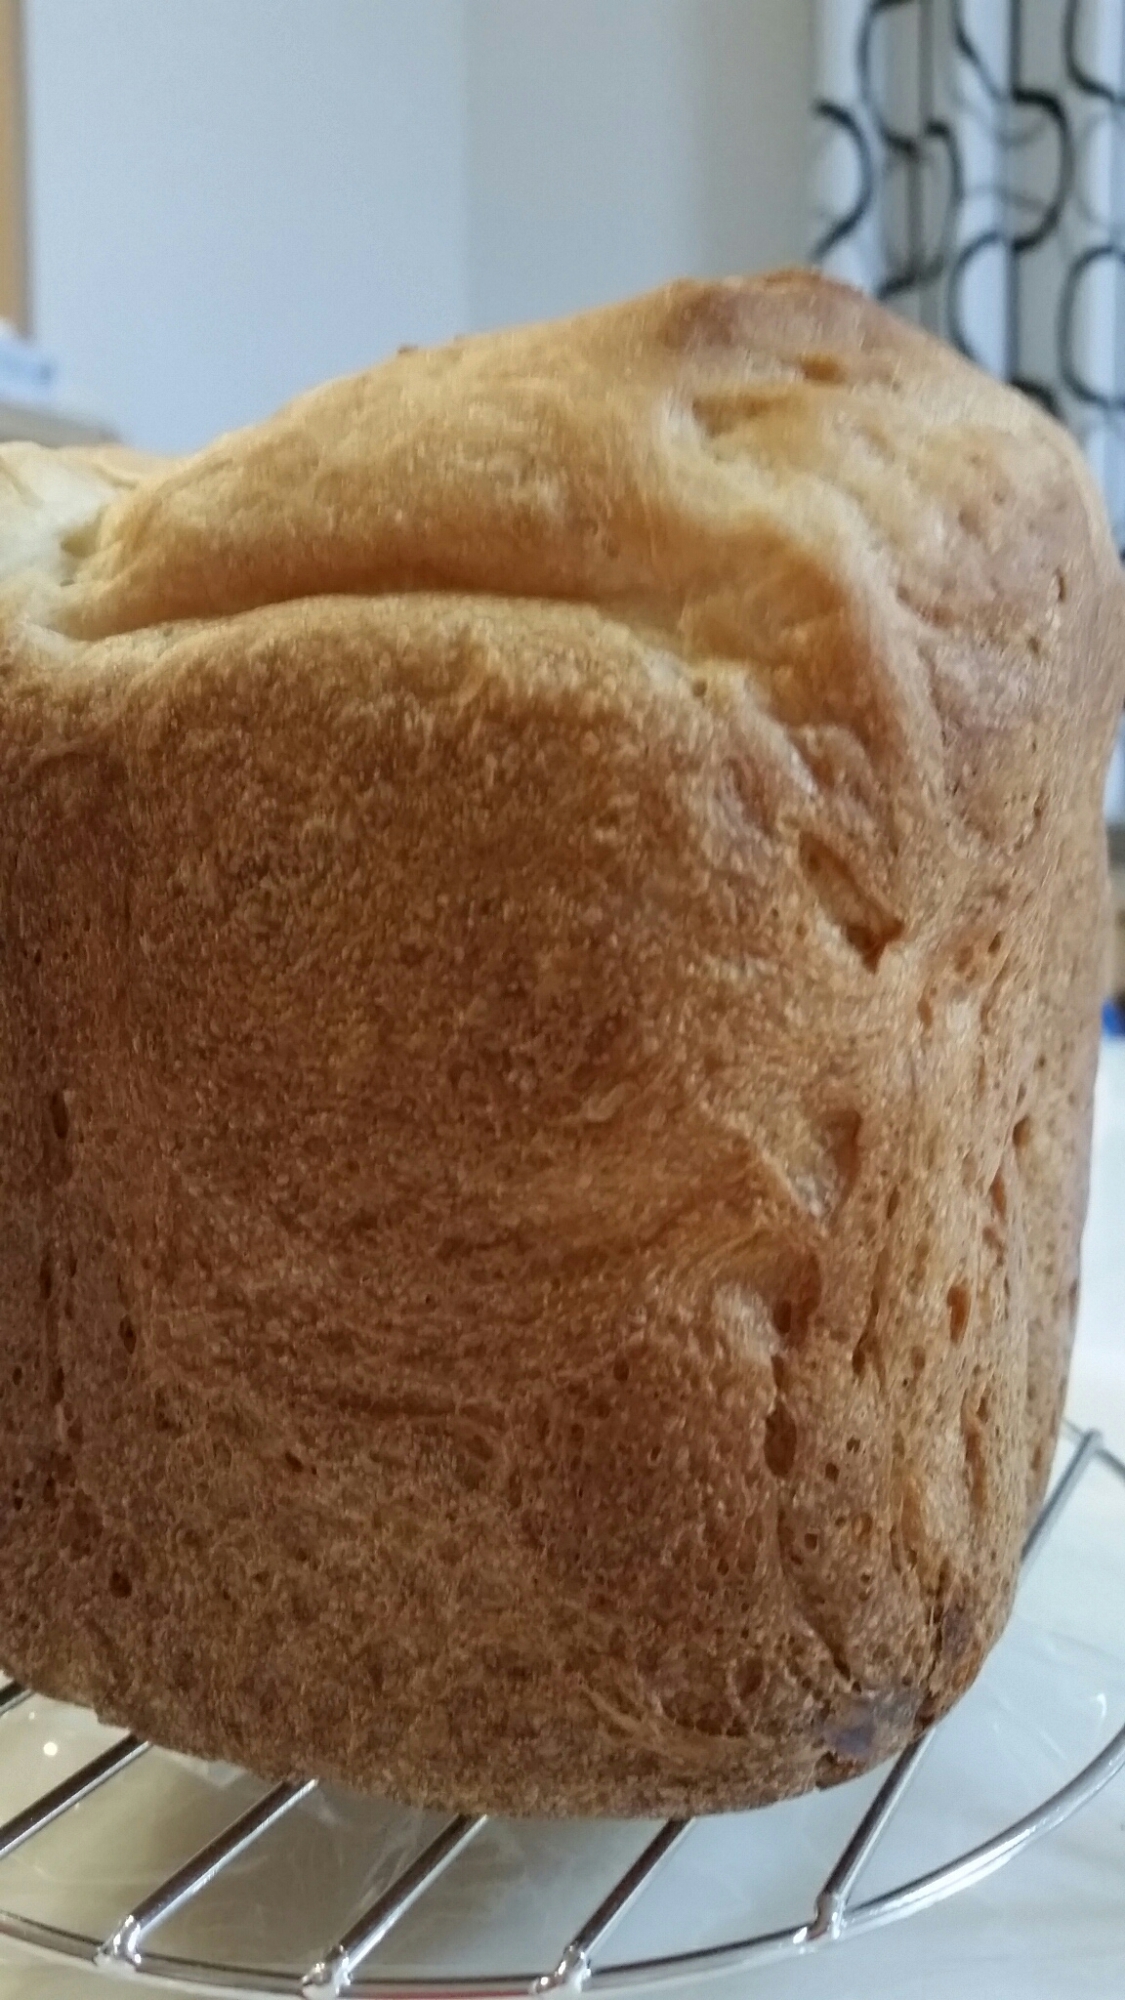 メープルシロップを使って、、食パン